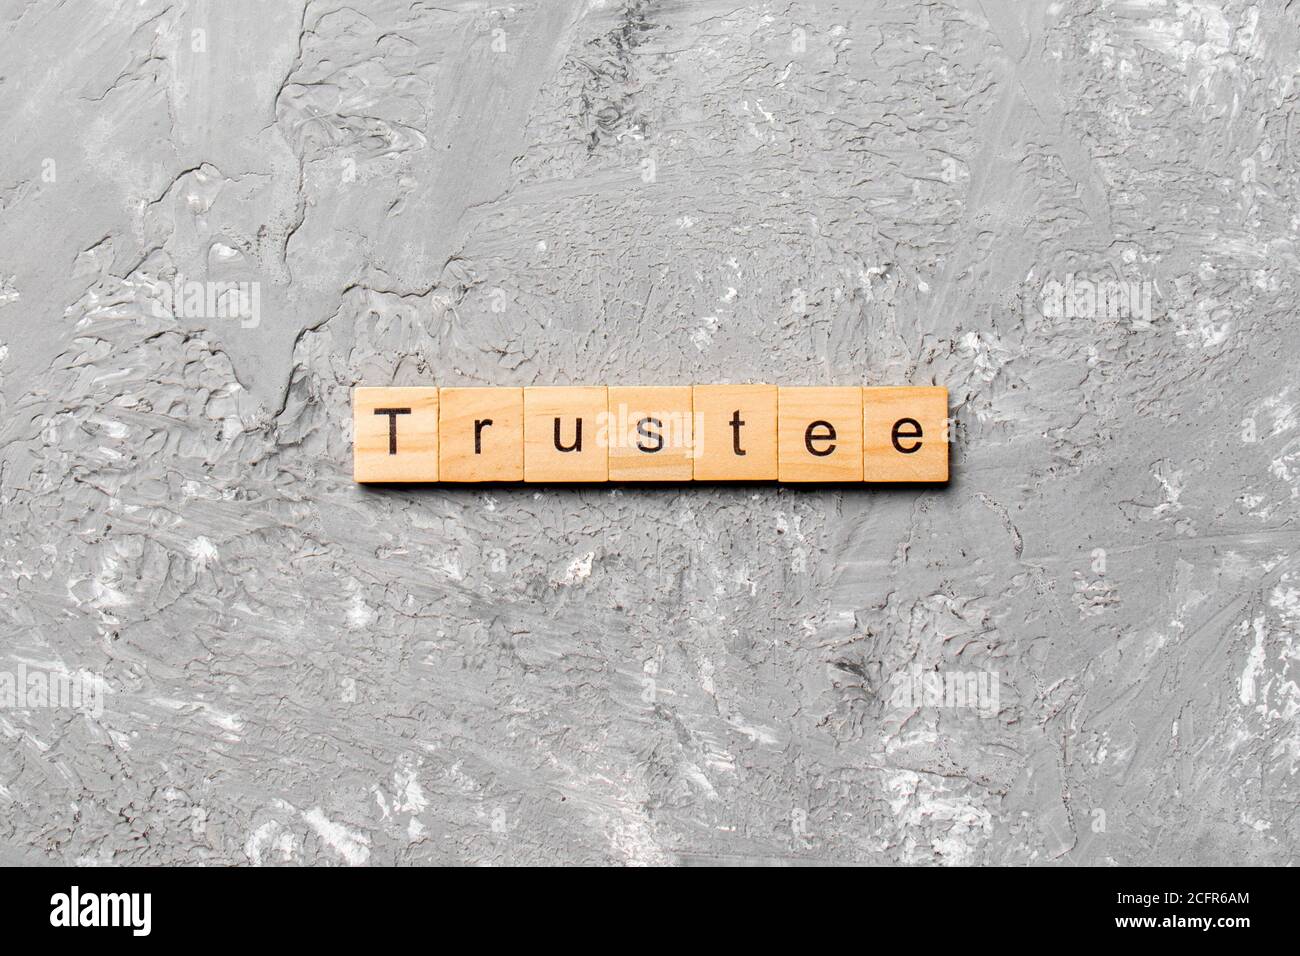 trustee word written on wood block. trustee text on table, concept. Stock Photo